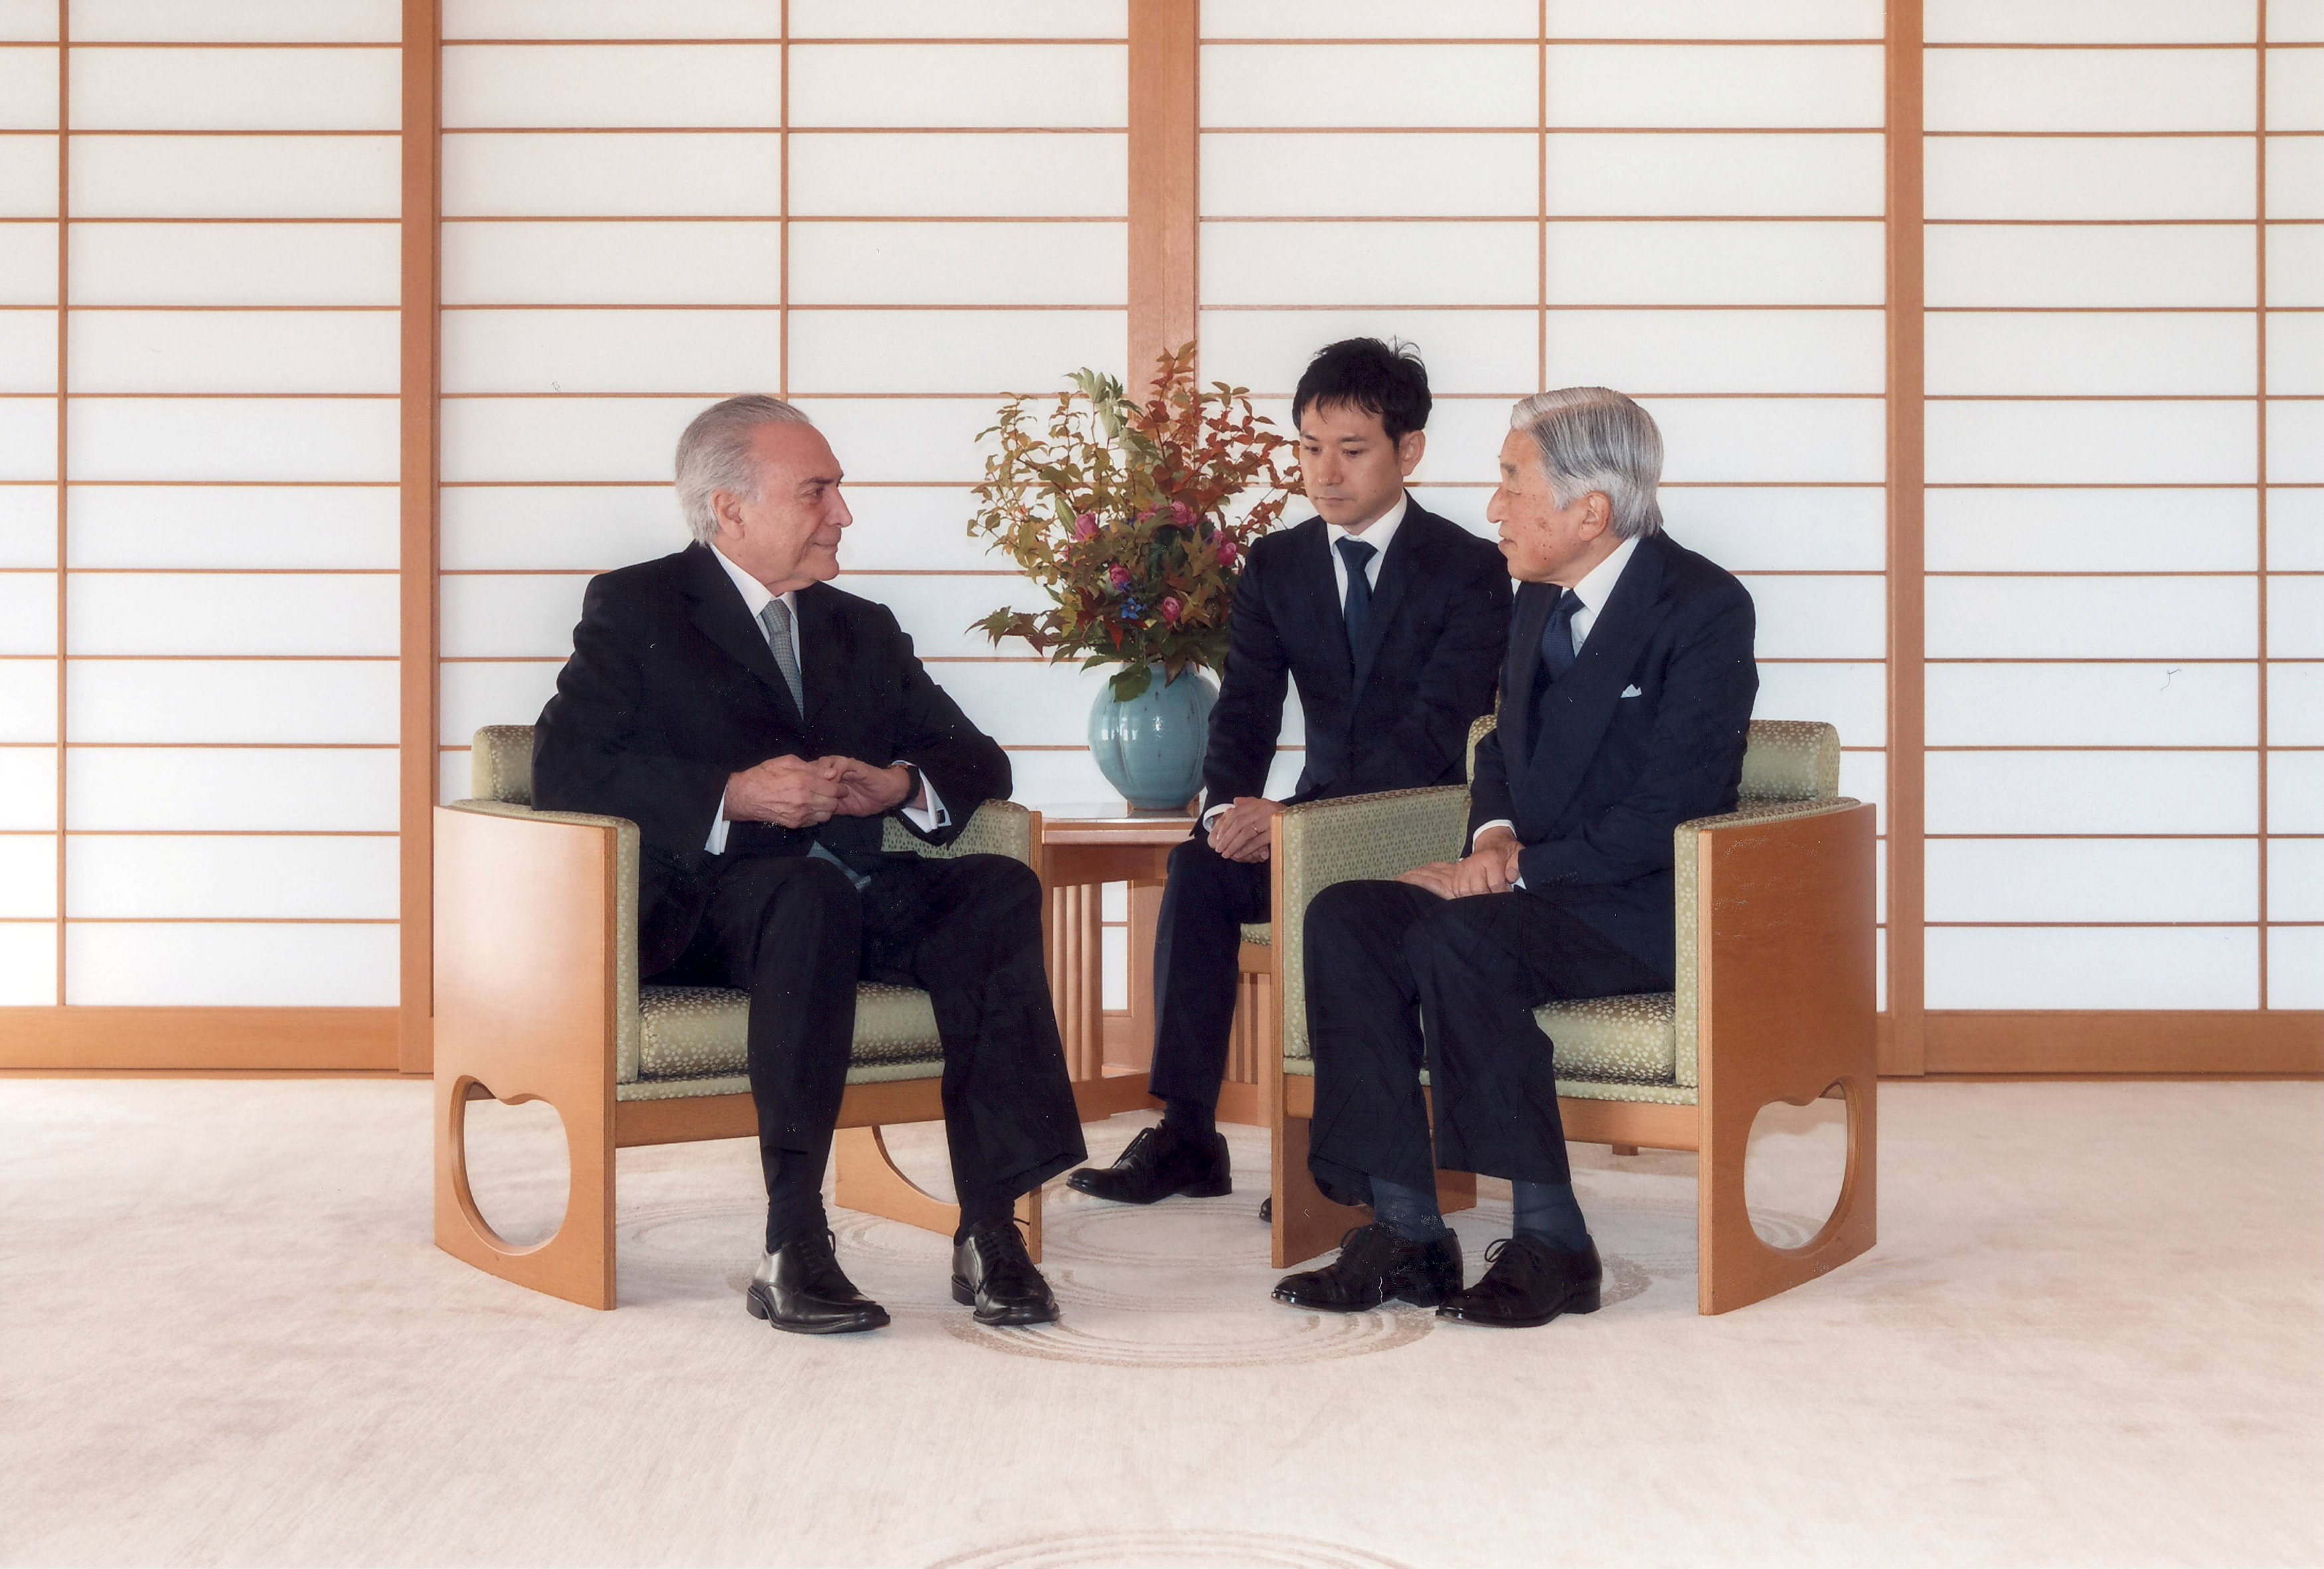 Sua Majestade Imperador Akihito do Japão recebe na Casa Imperial Japonesa o Presidente Michel Temer, do Brasil, estãn no Salão Imperial sentados o a ambos usam terno escuro , camisa branca e gravata escura. Estão conversando.